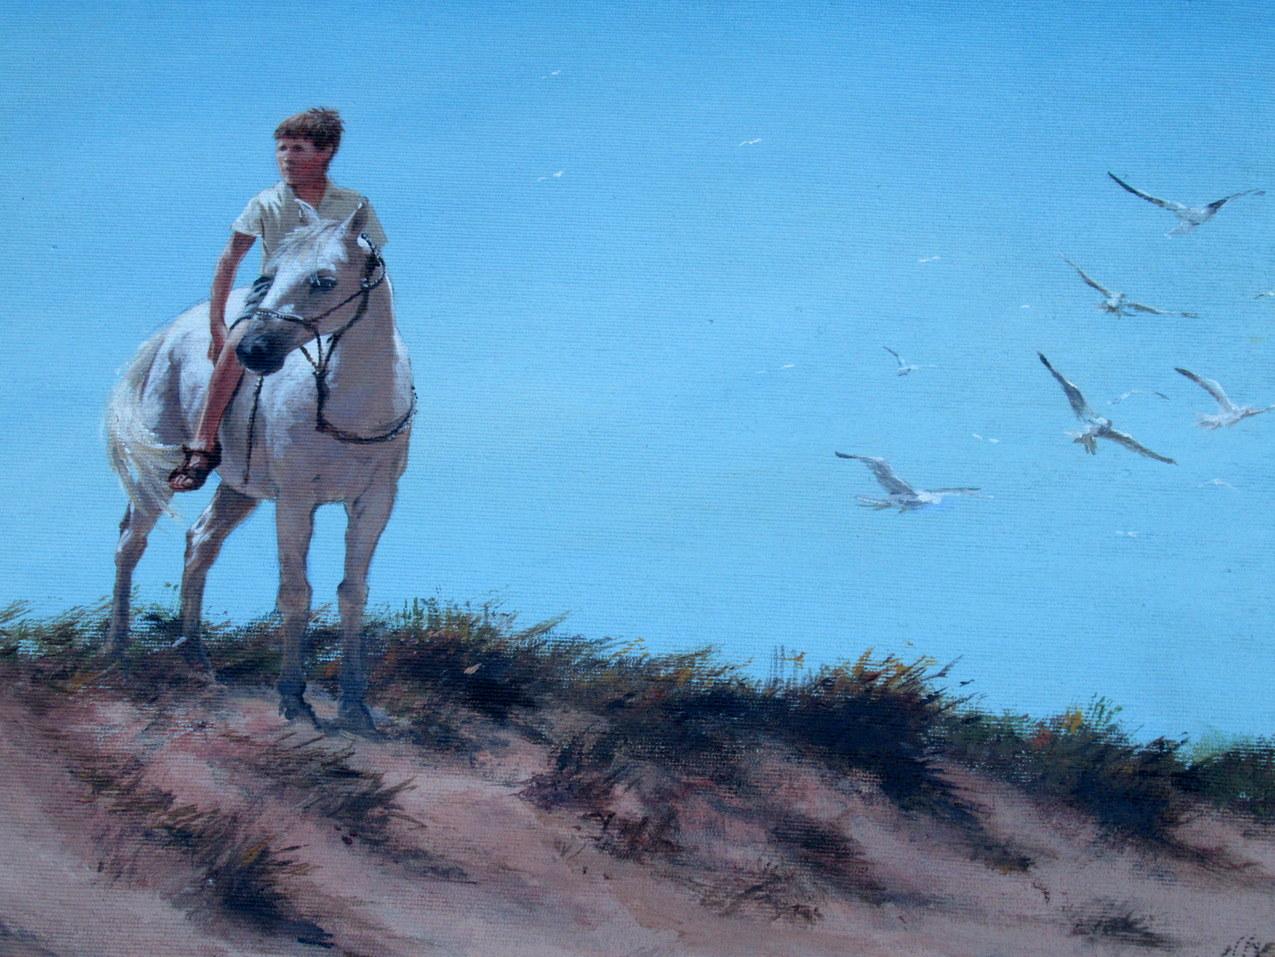 Superbe peinture irlandaise à l'huile sur toile encadrée, peinte durant le dernier quart du 20e siècle, par Ted Jones (Irlandais 1952-2017). 

Ce magnifique tableau représente un jeune homme à cheval dans des dunes de sable avec des mouettes en